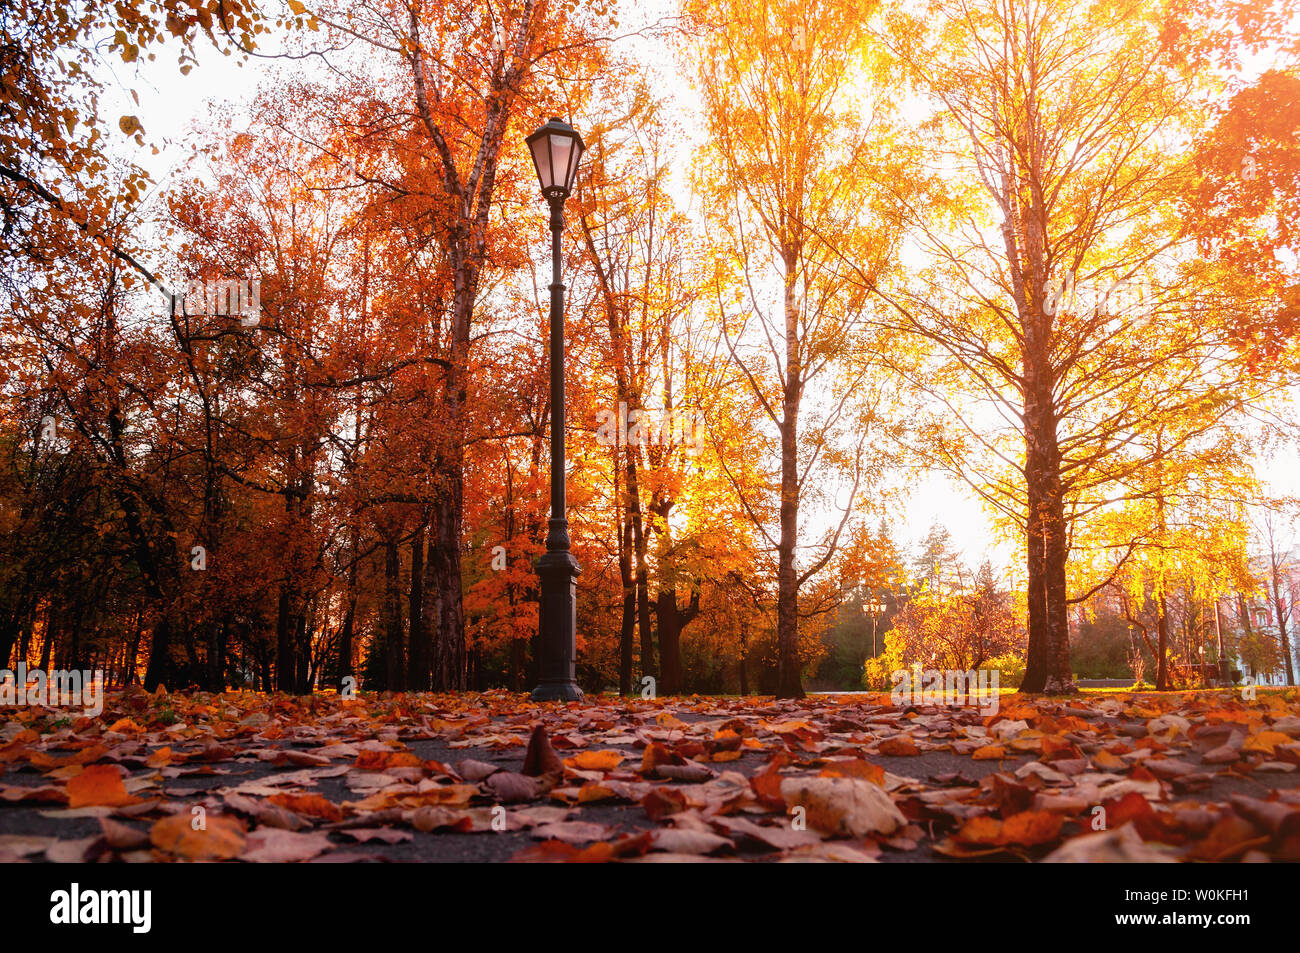 In autunno il paesaggio della città. In autunno gli alberi nella soleggiata caduta park illuminato dal sole e caduto foglie di acero in primo piano. Autunno city park scena Foto Stock